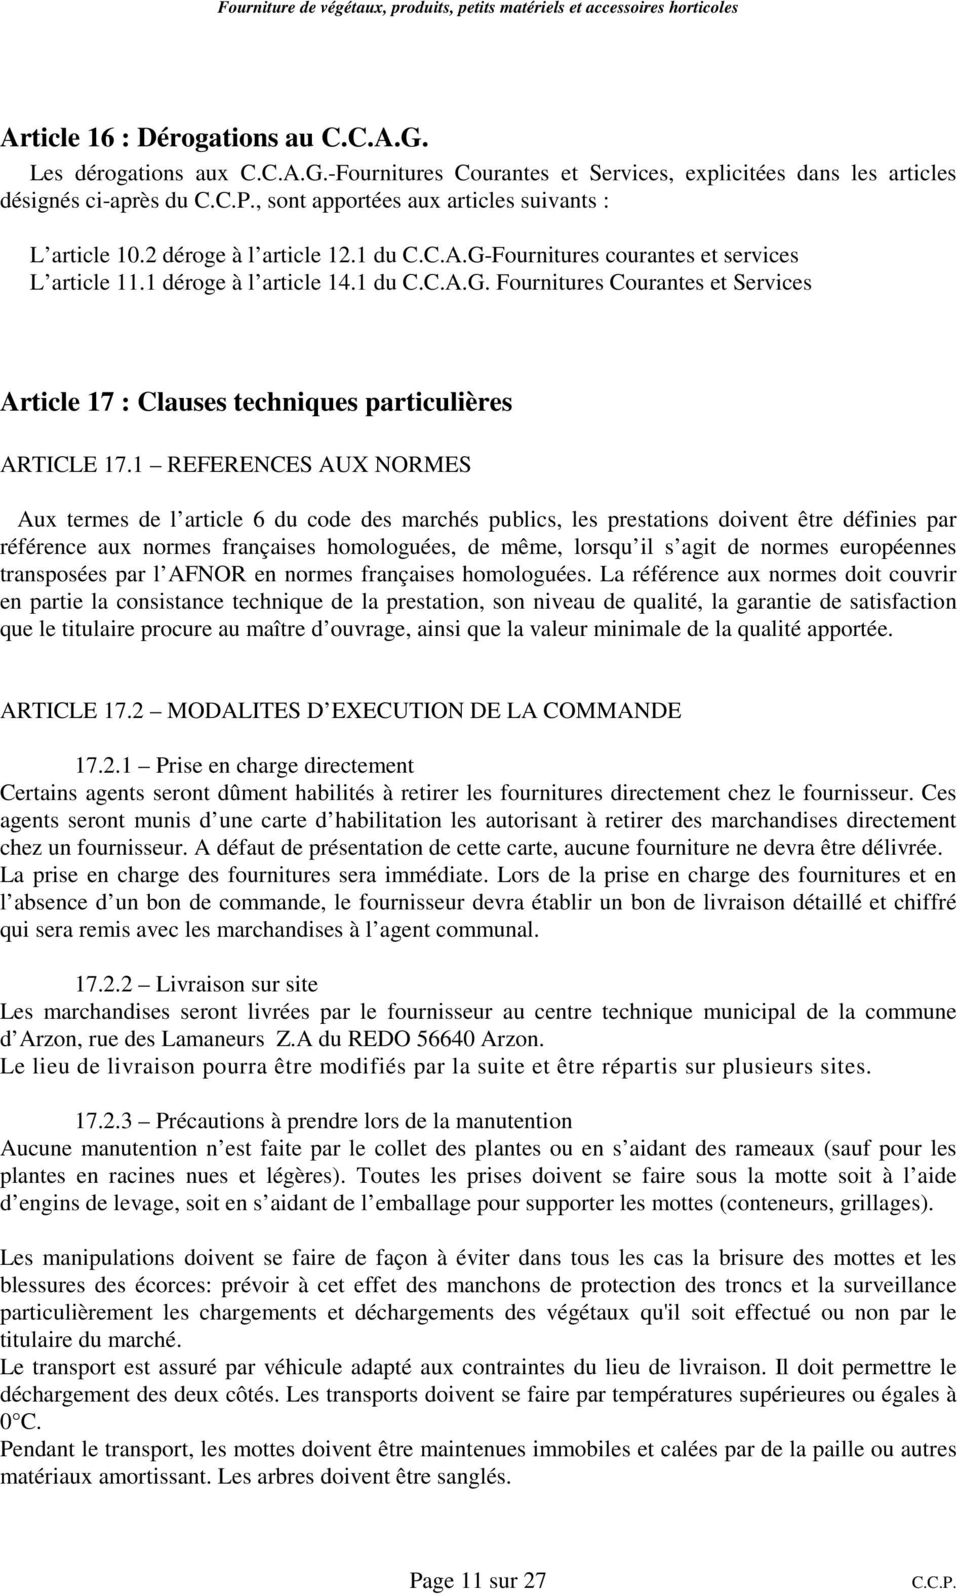 1 REFERENCES AUX NORMES Aux termes de l article 6 du code des marchés publics, les prestations doivent être définies par référence aux normes françaises homologuées, de même, lorsqu il s agit de